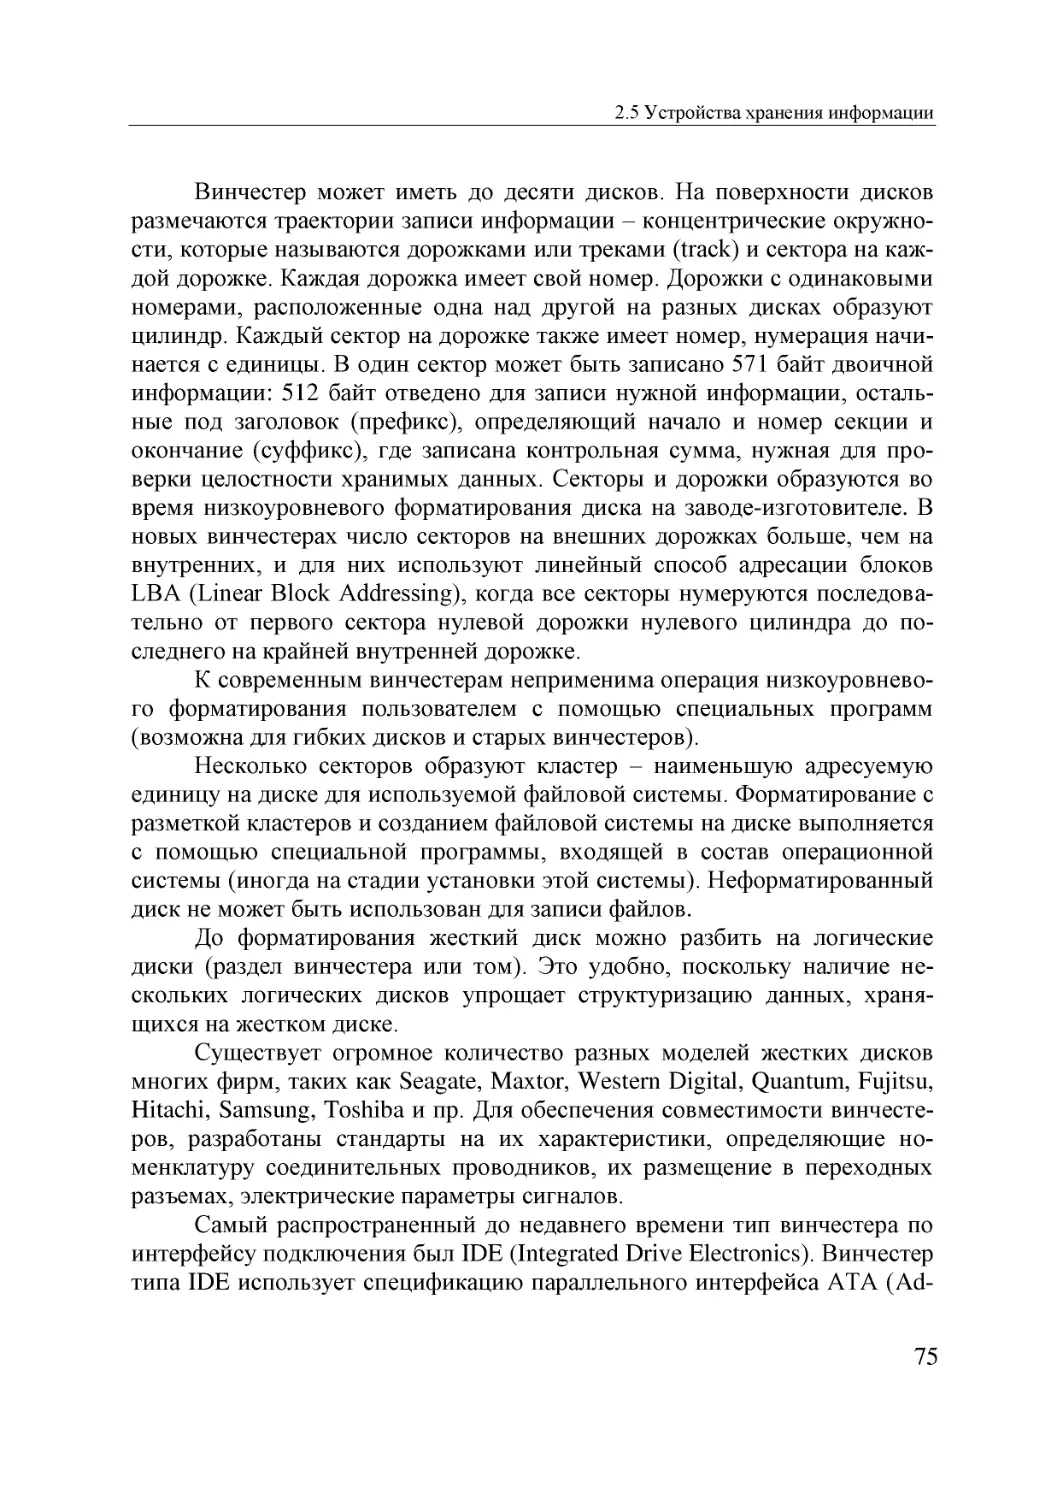 Informatika_Uchebnik_dlya_vuzov_2010 75